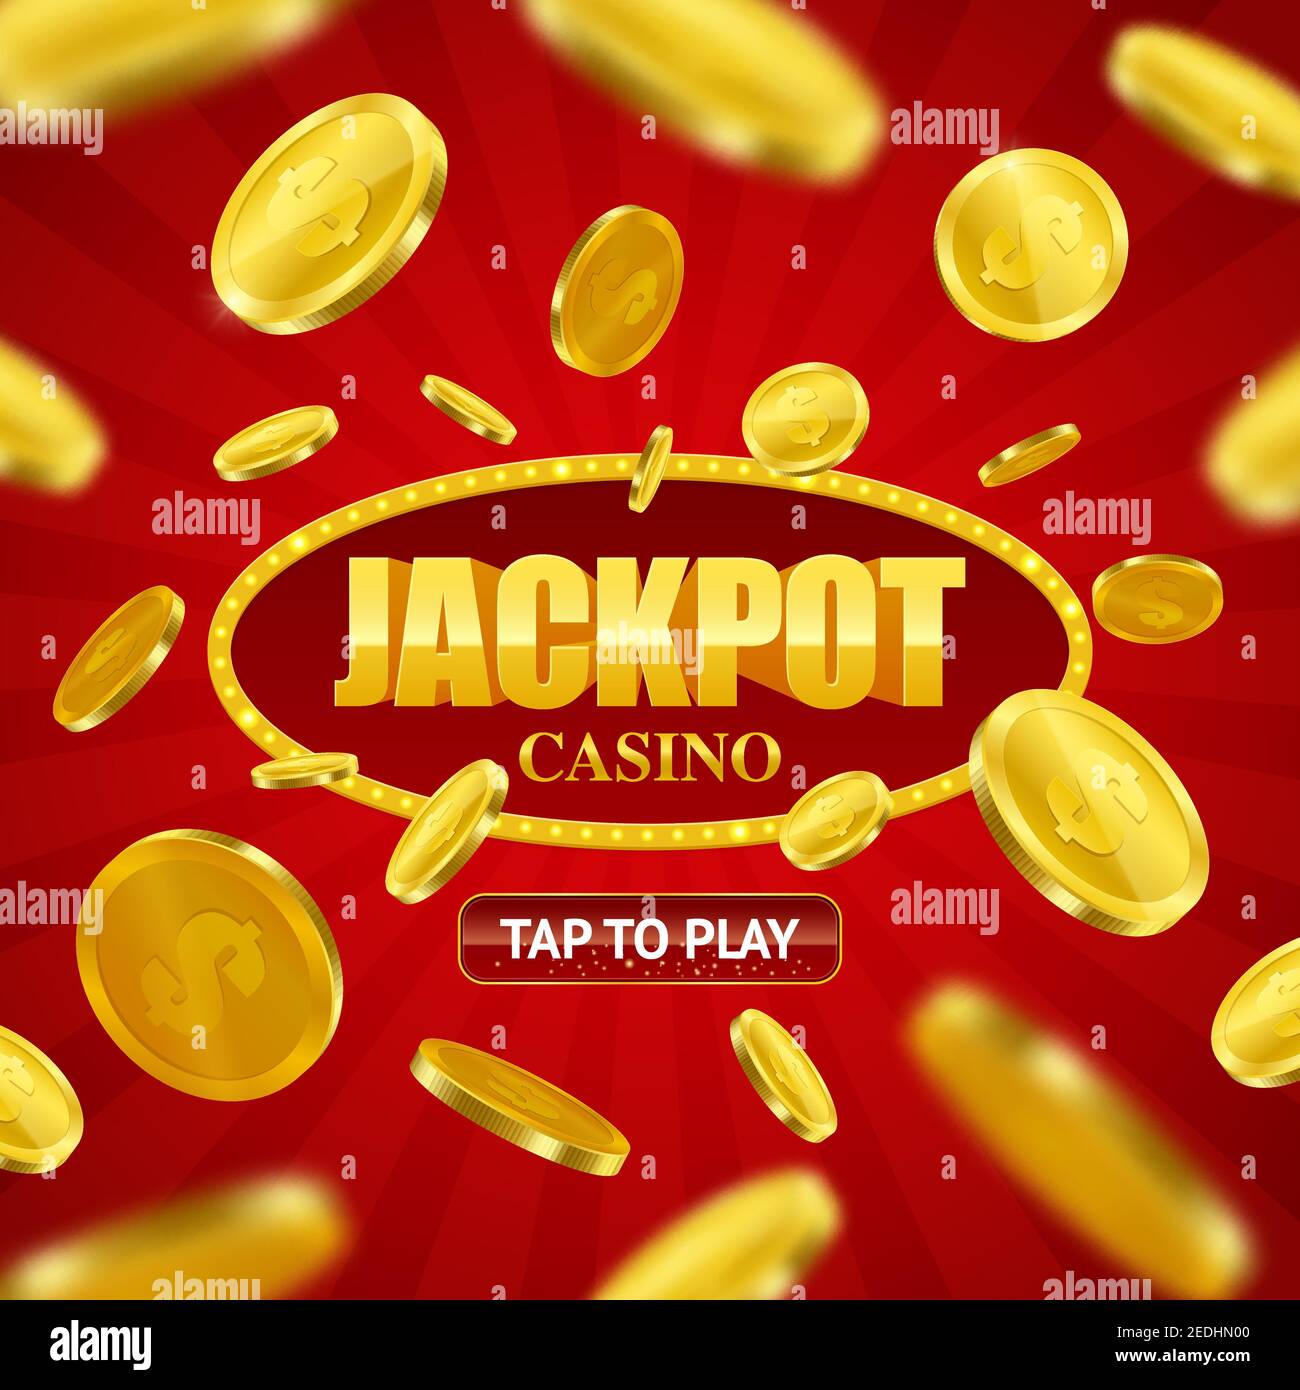 Thử thách bản thân với trò chơi đánh bạc Jackpot trực tuyến và trúng lớn. Với những đường chơi lôi cuốn và hình ảnh đẹp mắt, trò chơi này sẽ làm bạn mãn nhãn và hứng khởi. Nhấn vào hình ảnh để chơi thử Jackpot casino game ngay bây giờ!